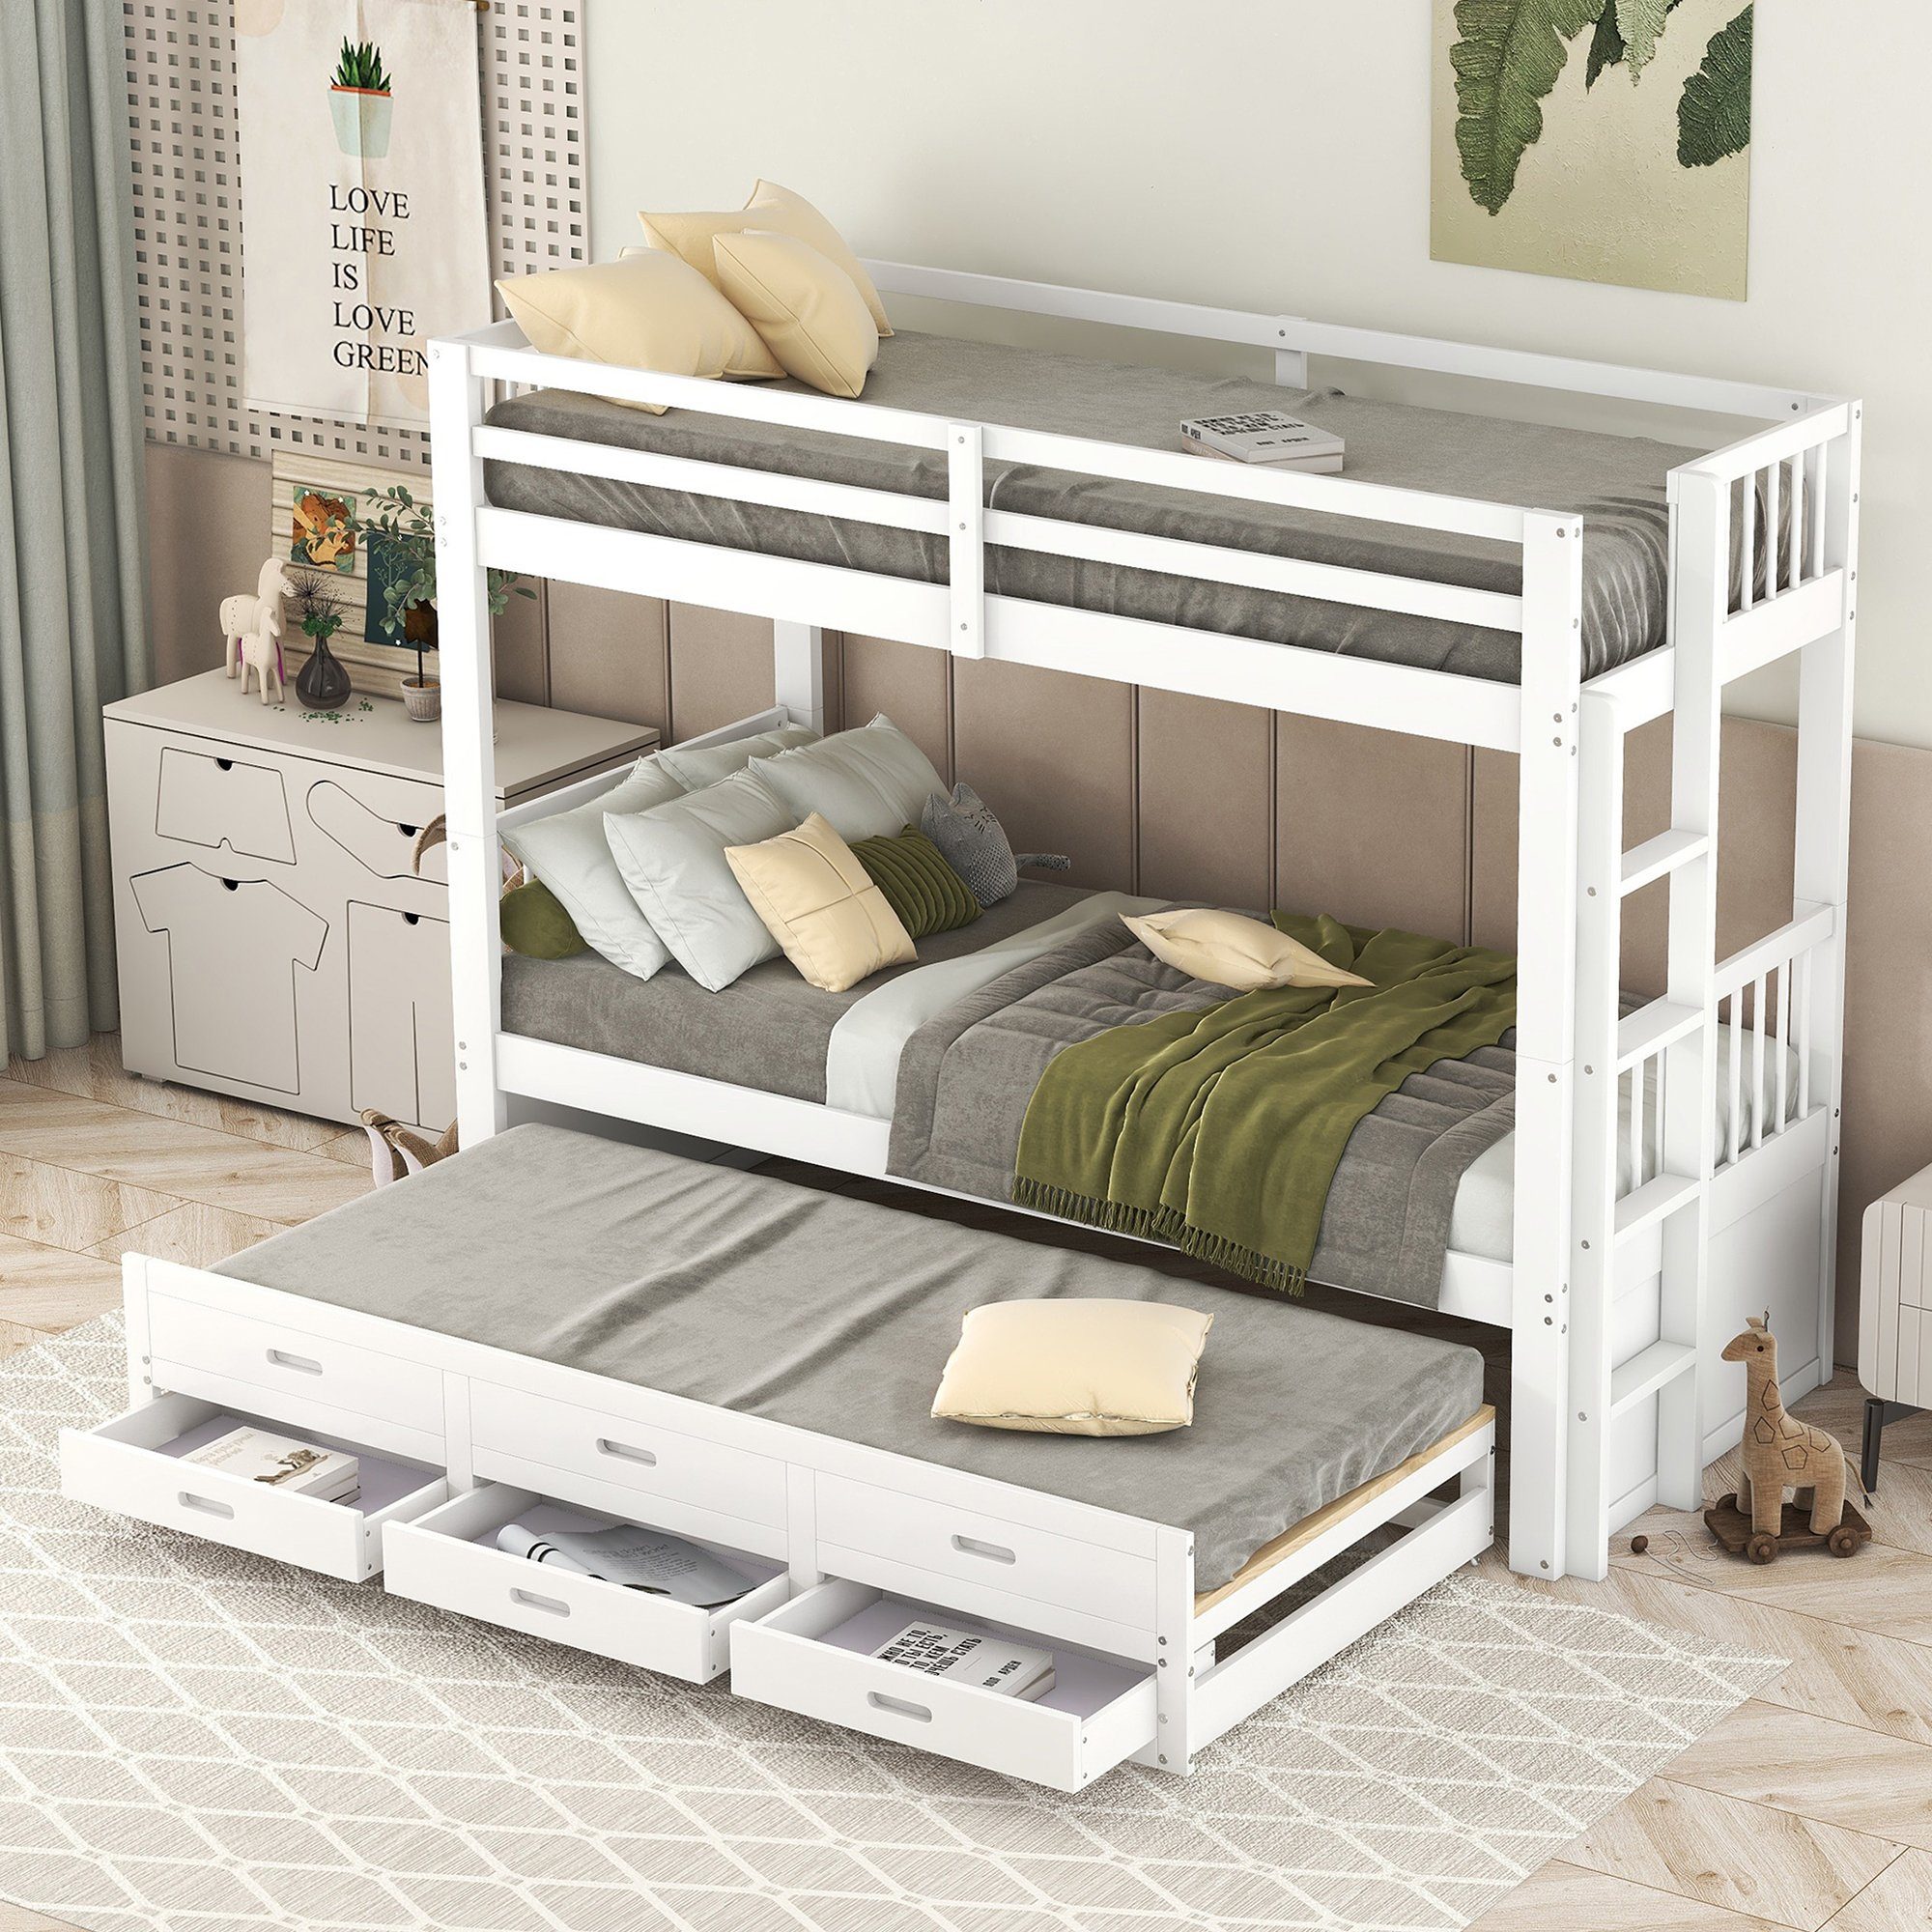 OKWISH Etagenbett Kinderbett, Hausbett für Mädchen und Jungen, Bett (mit Leiter undausziehbarem Bett und 3 Schubladen), Ohne Matratze weiß